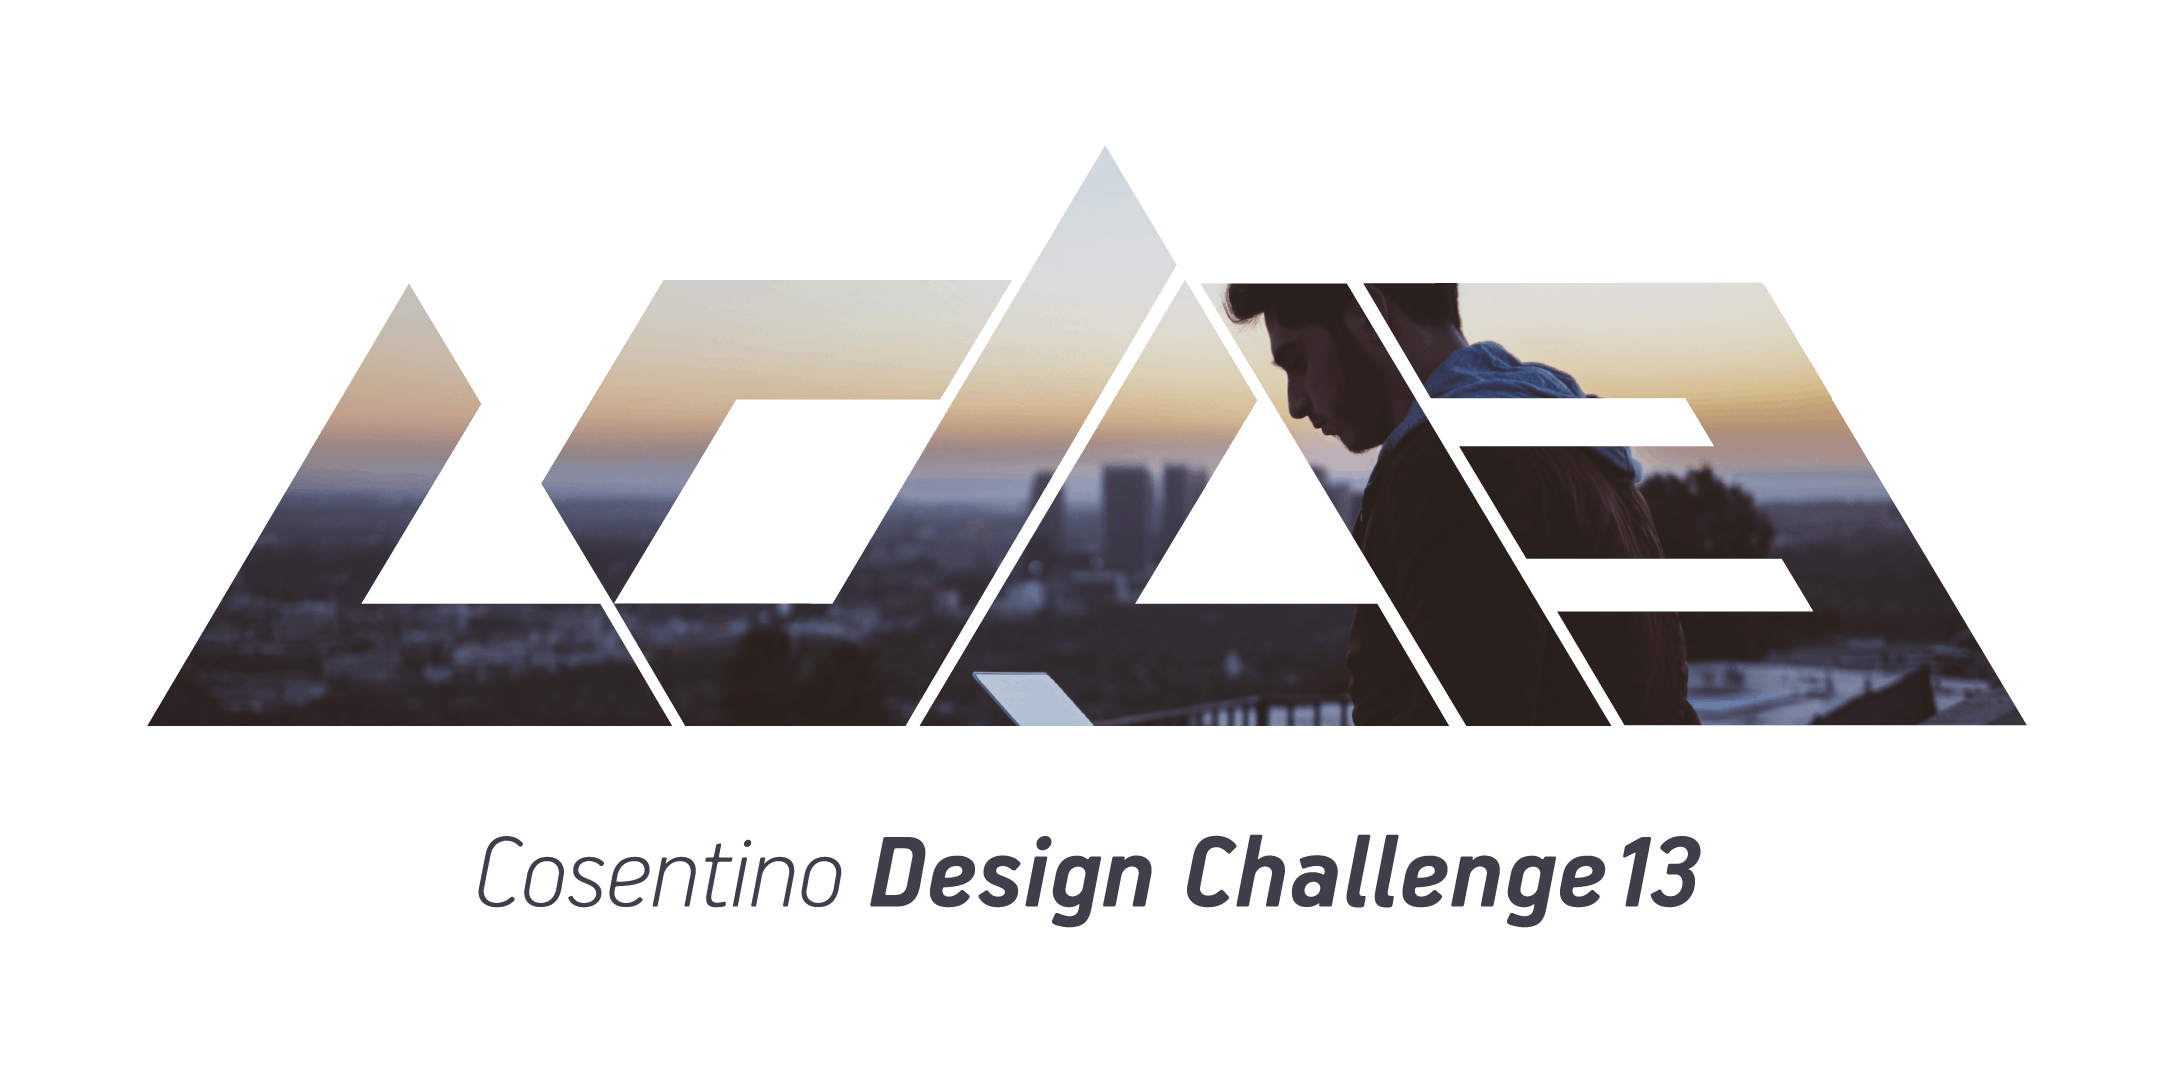 Numéro d'image 32 de la section actuelle de Cosentino présente la 13ème édition du Cosentino Design Challenge de Cosentino France